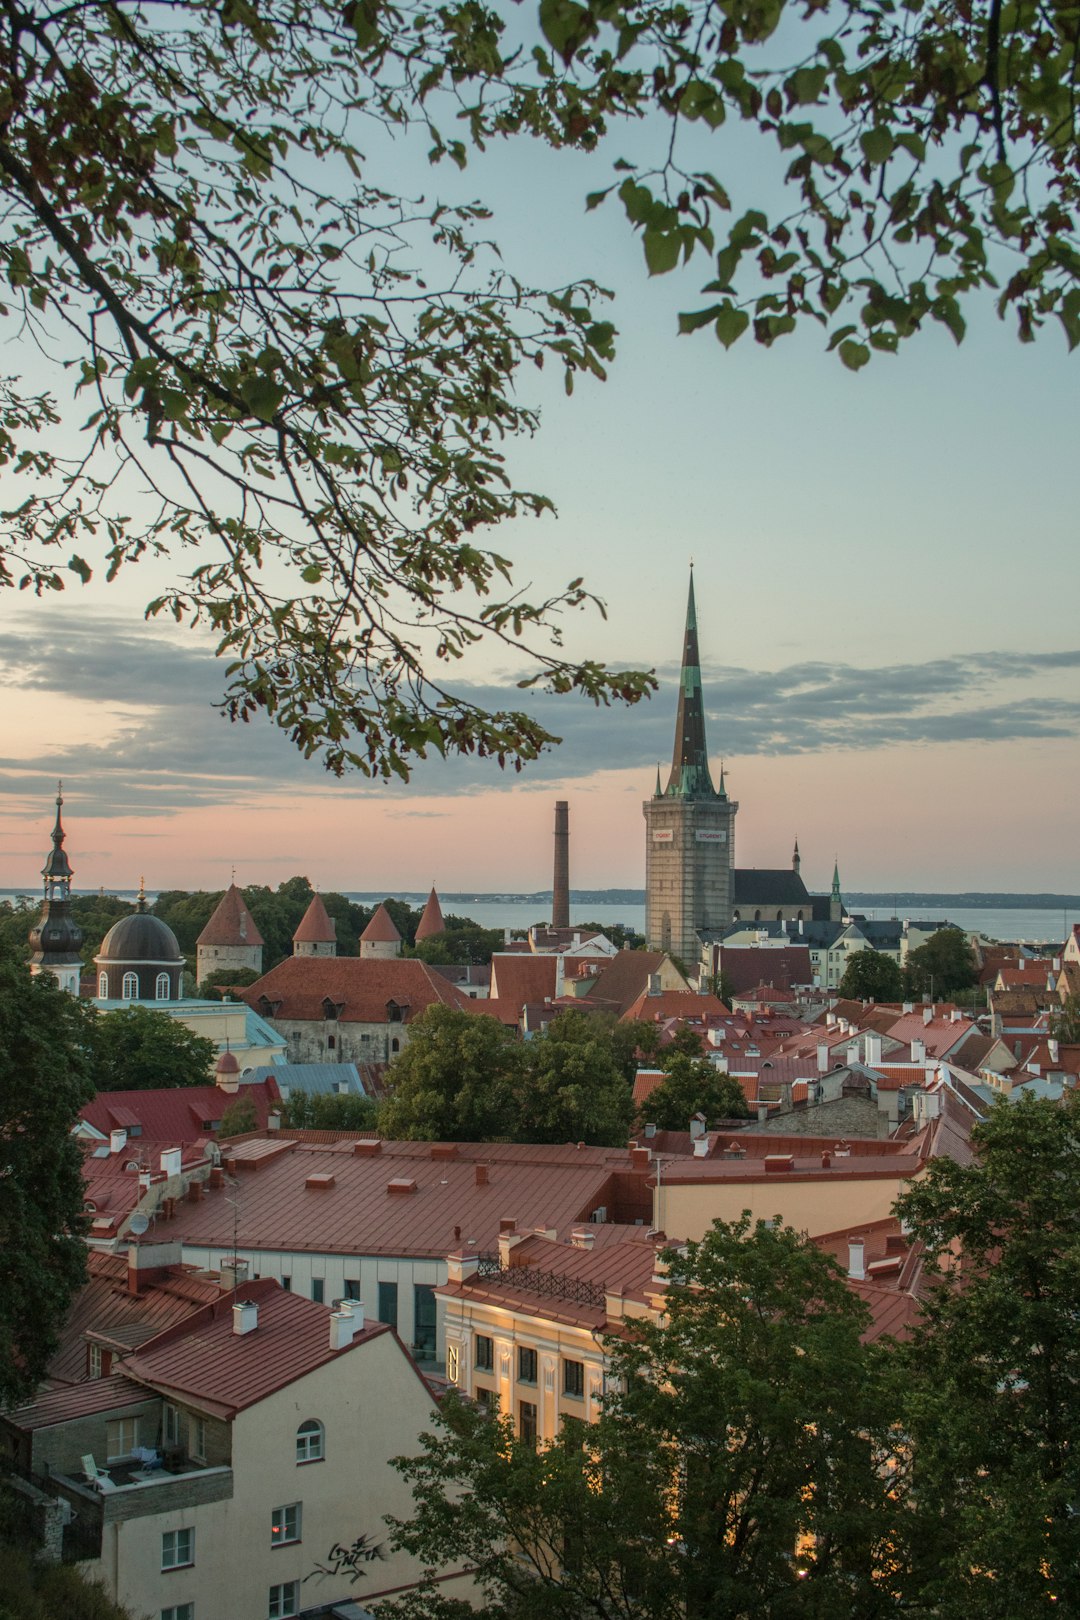 Town photo spot Tallinn Neeme